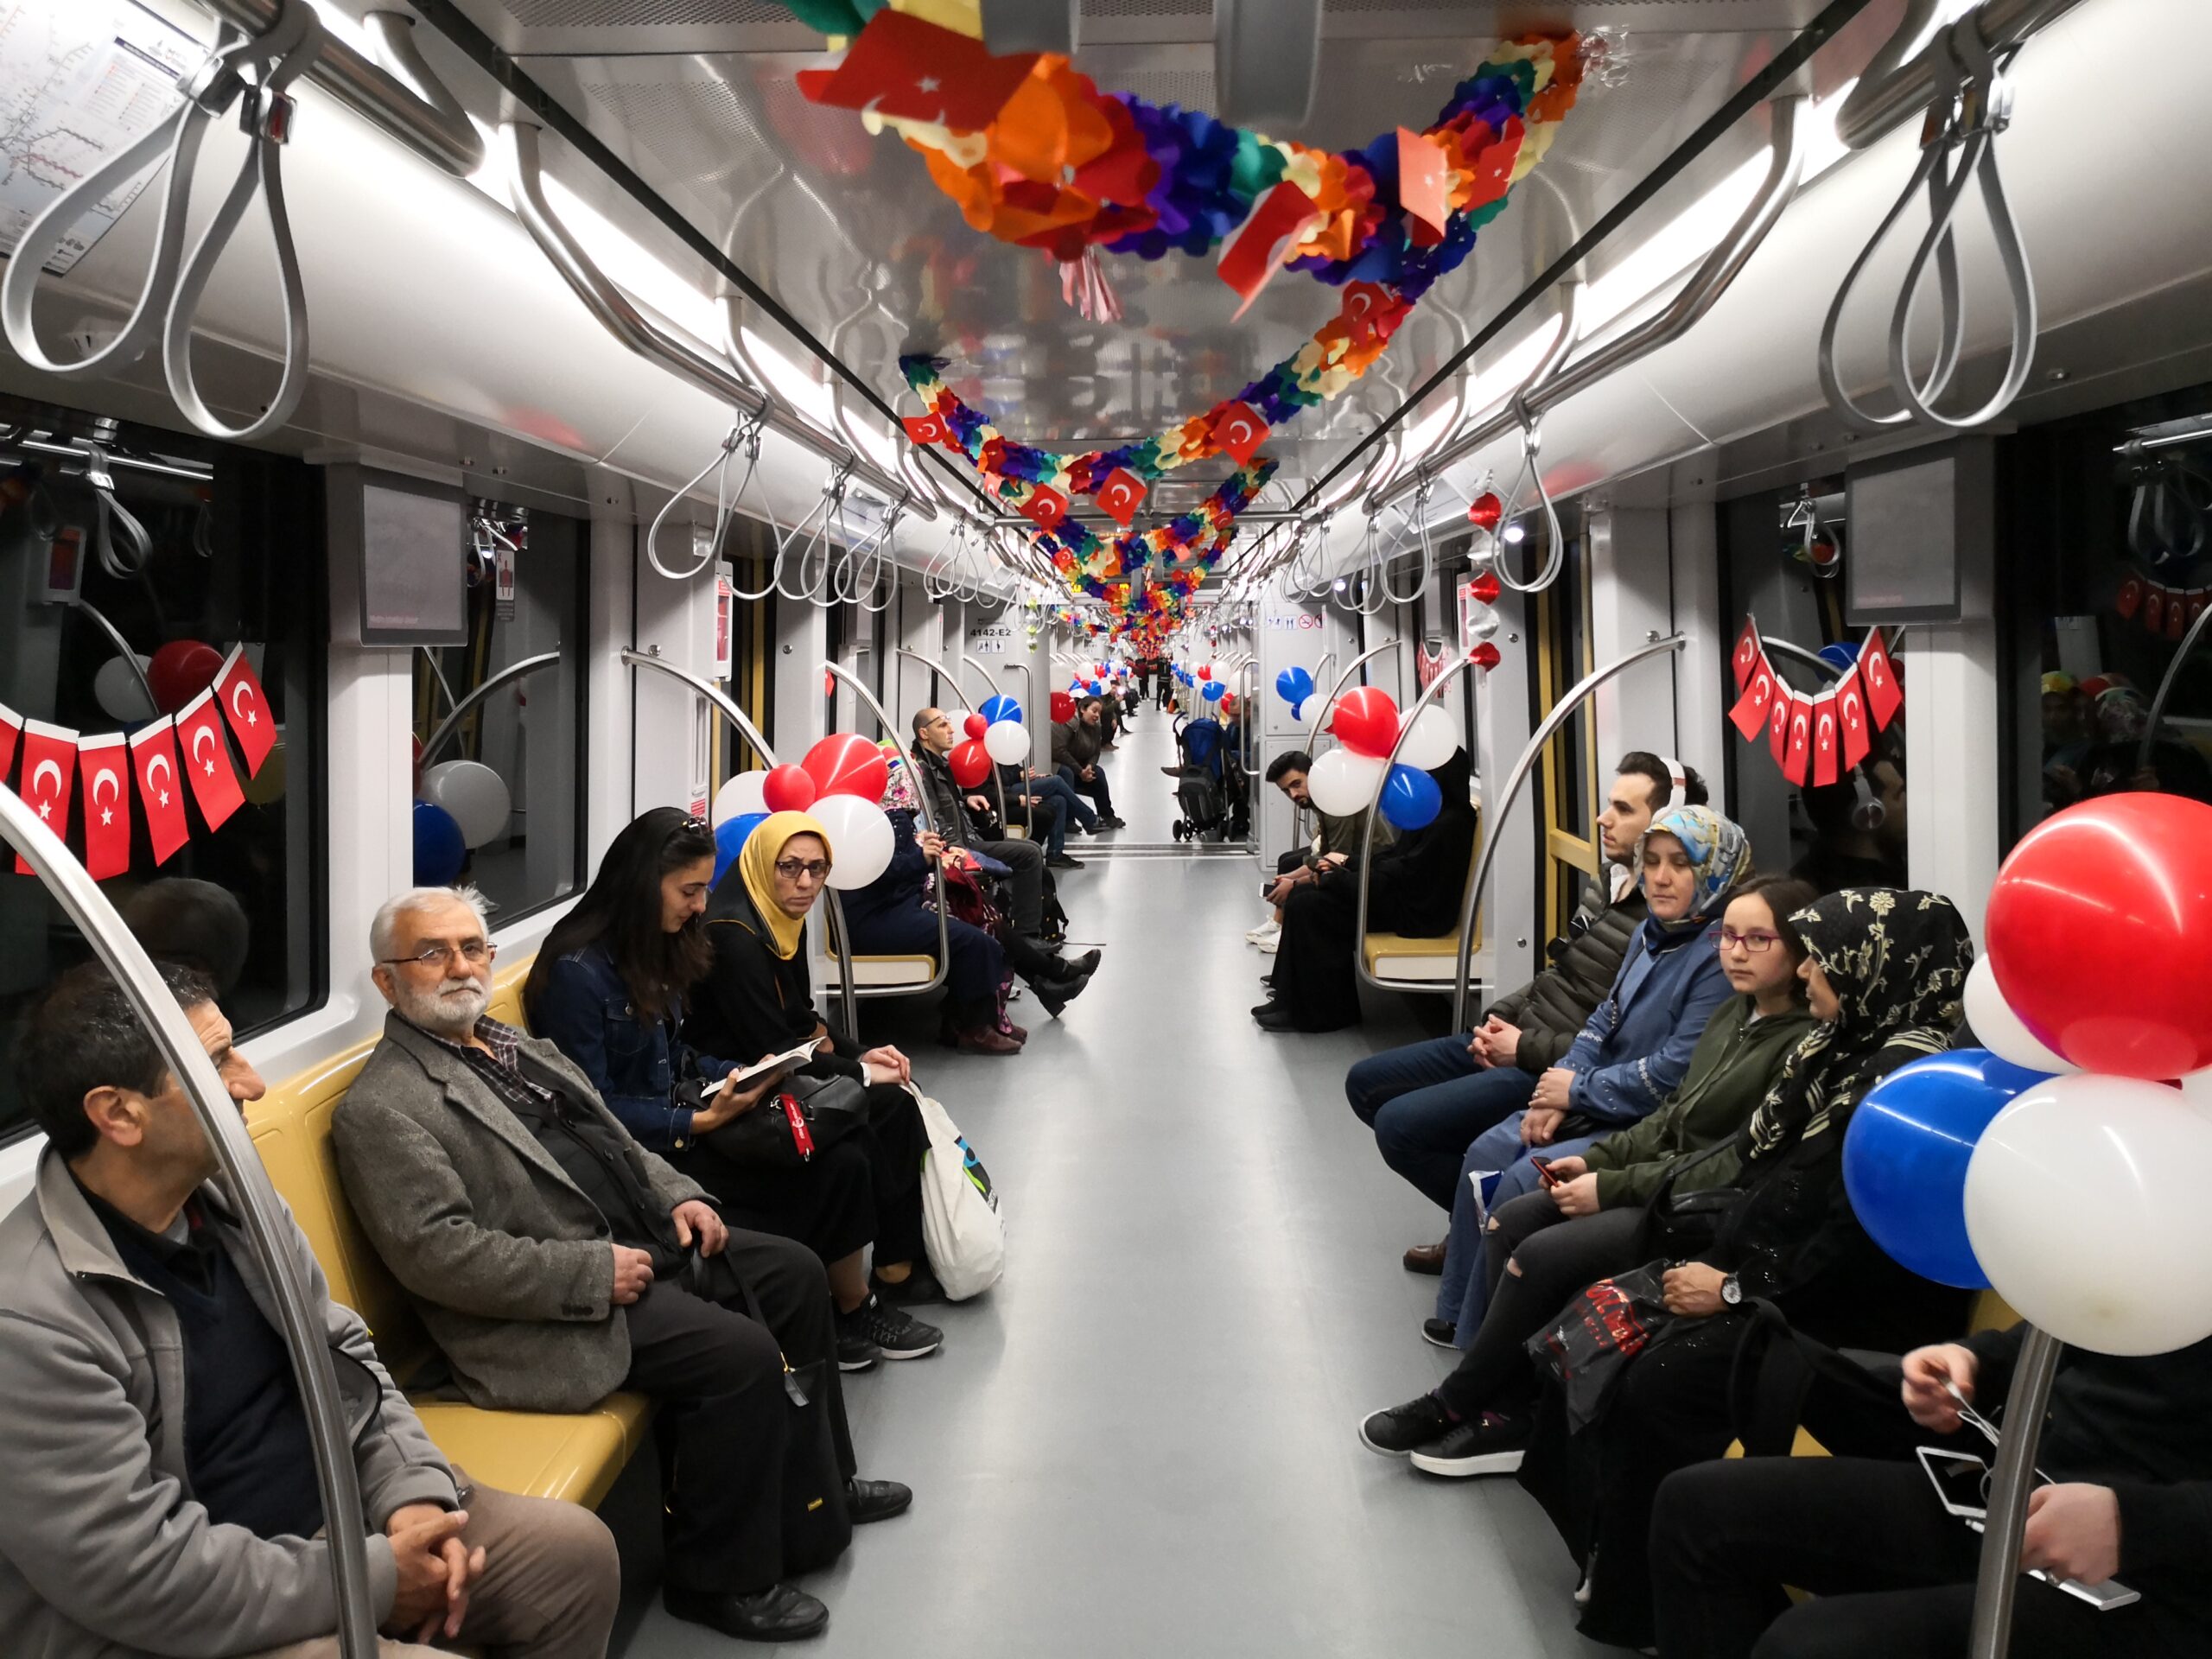 İstanbul yeni yıl kutlamalarına hazır! Yılbaşı gecesi toplu taşıma araçları 24 saat hizmet verecek 